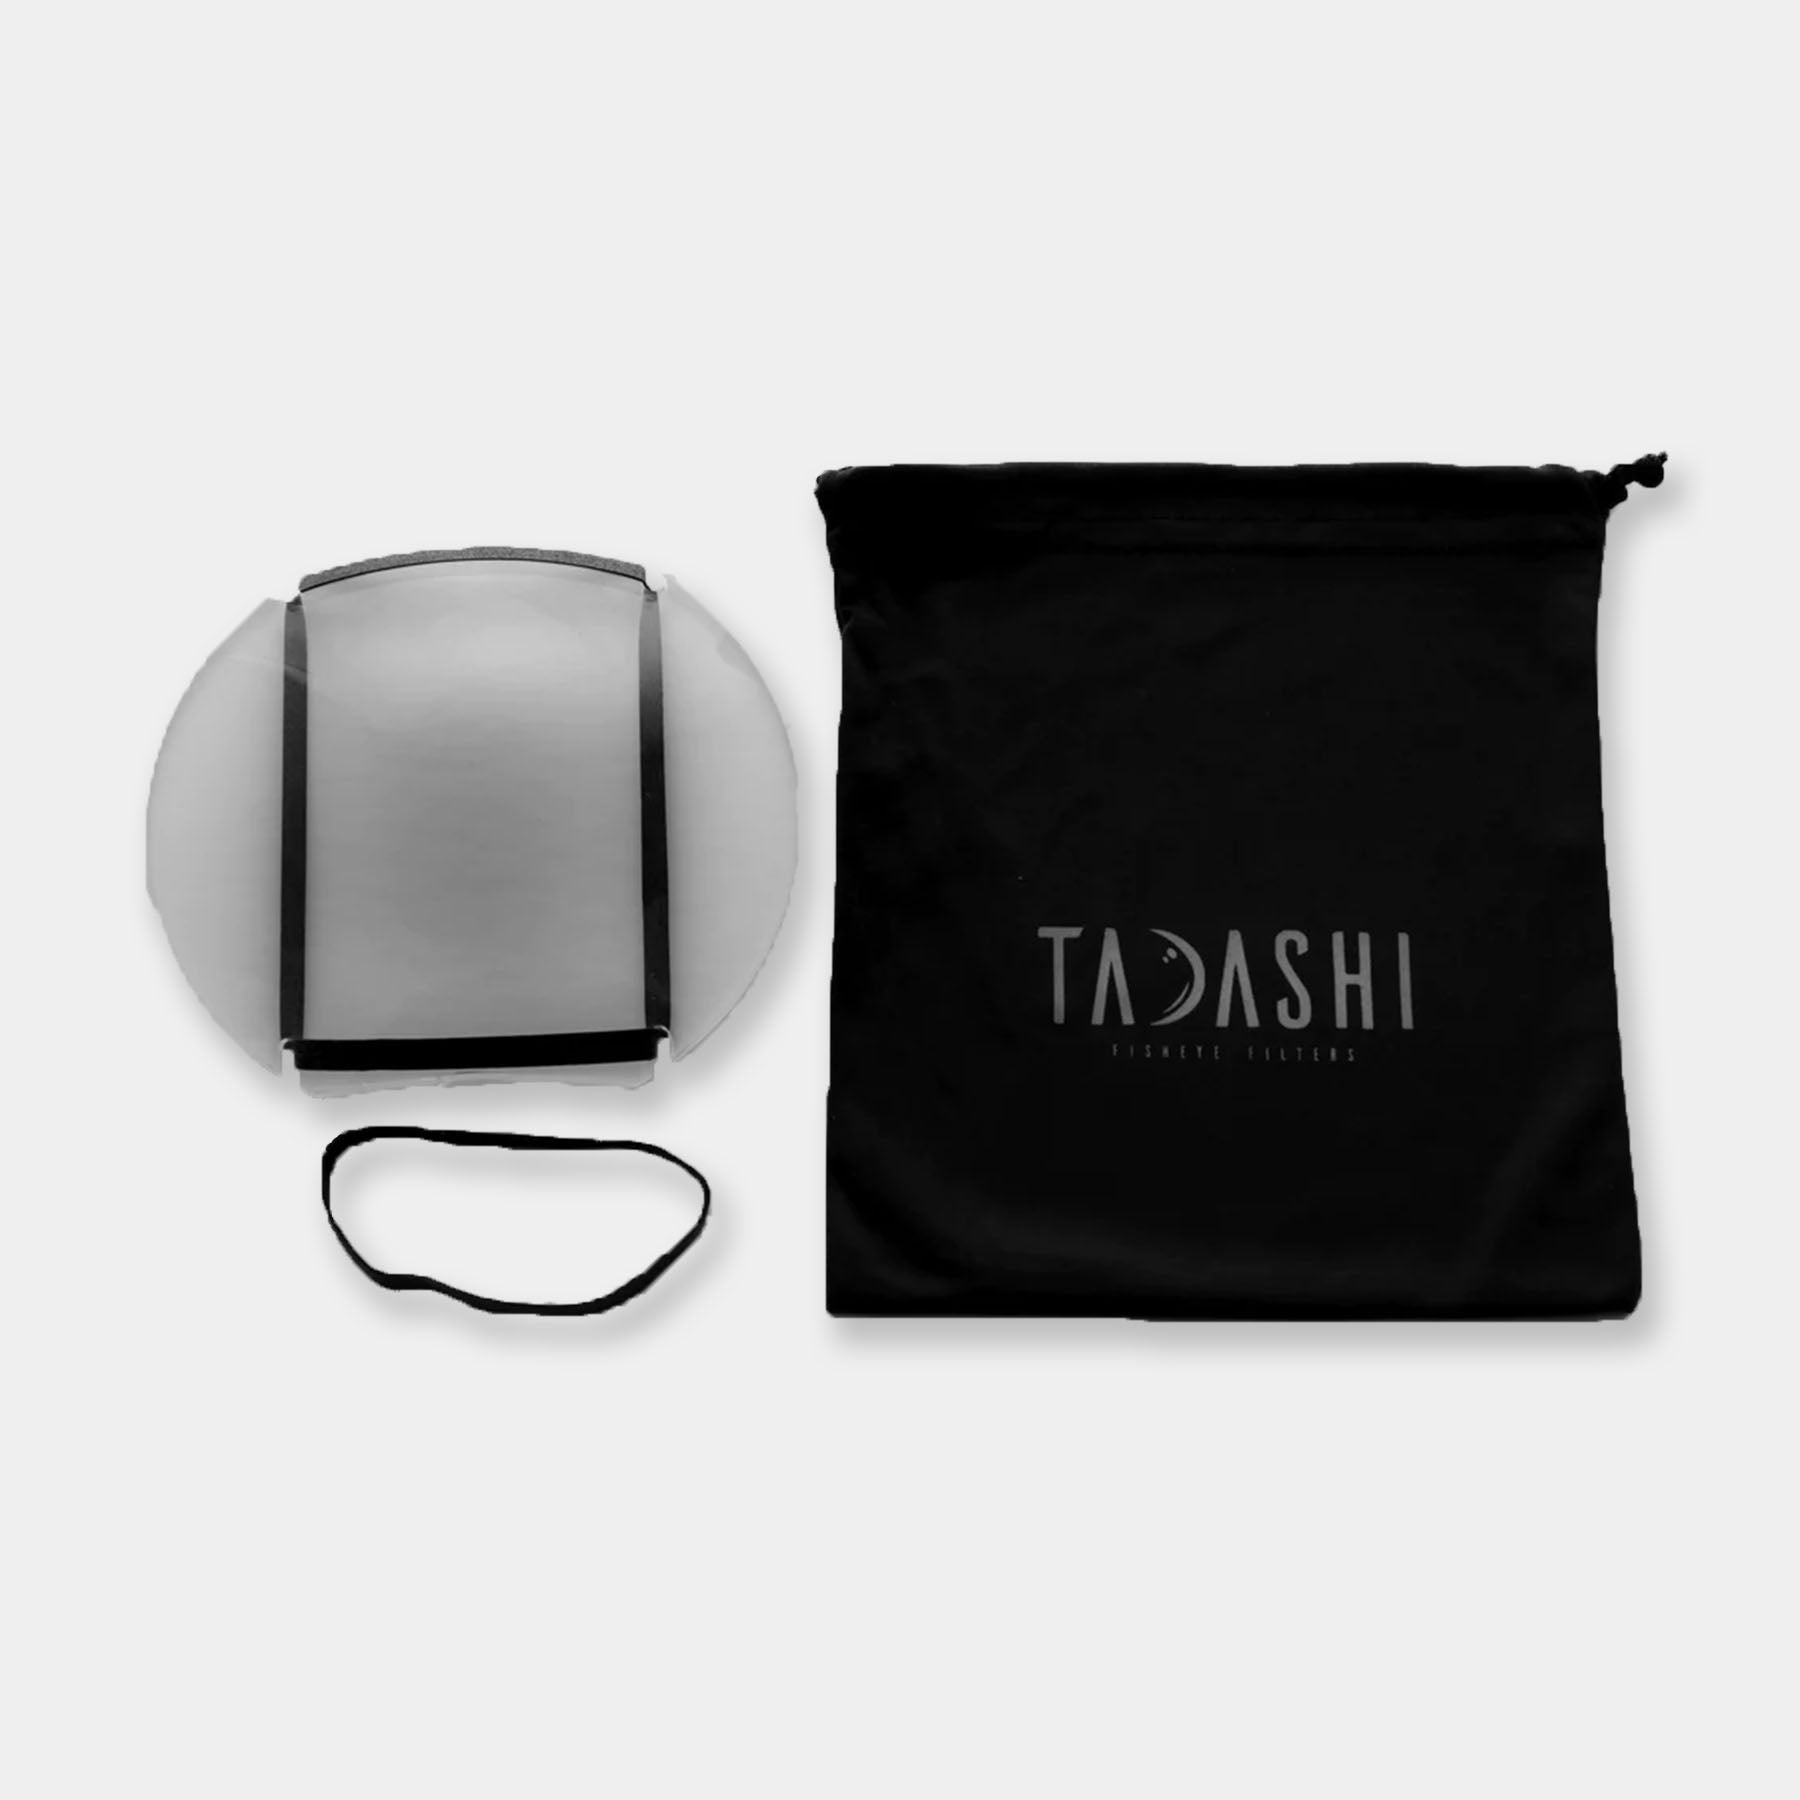 Tadashi Protection Fisheye - MKI